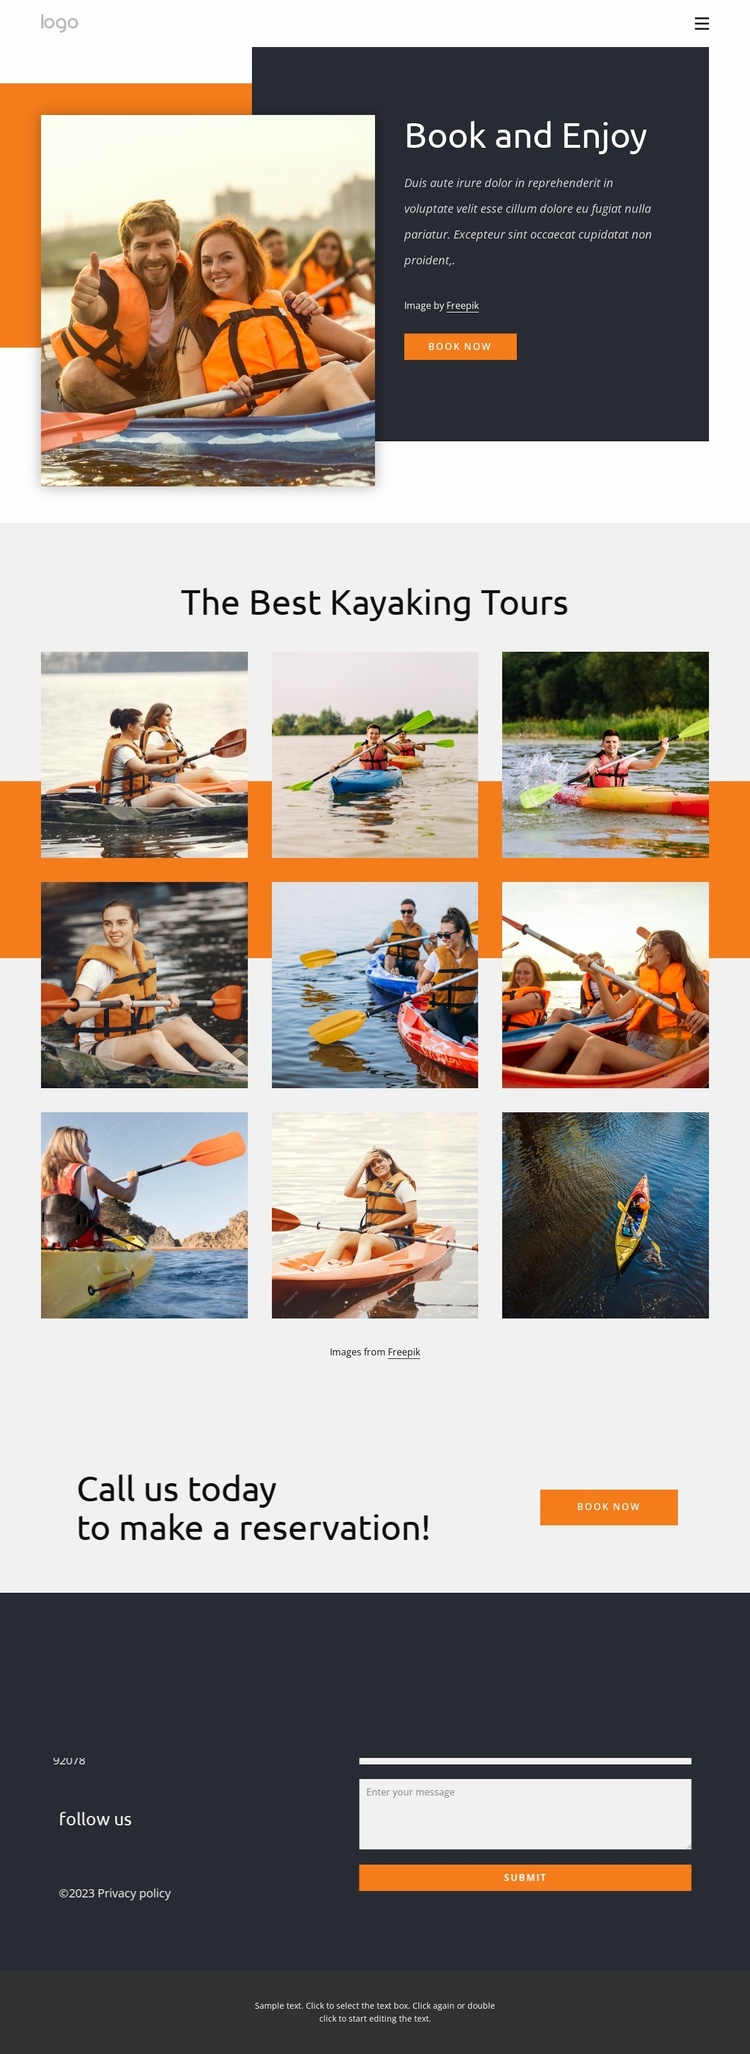 Kayaking tours and holidays Landing Page